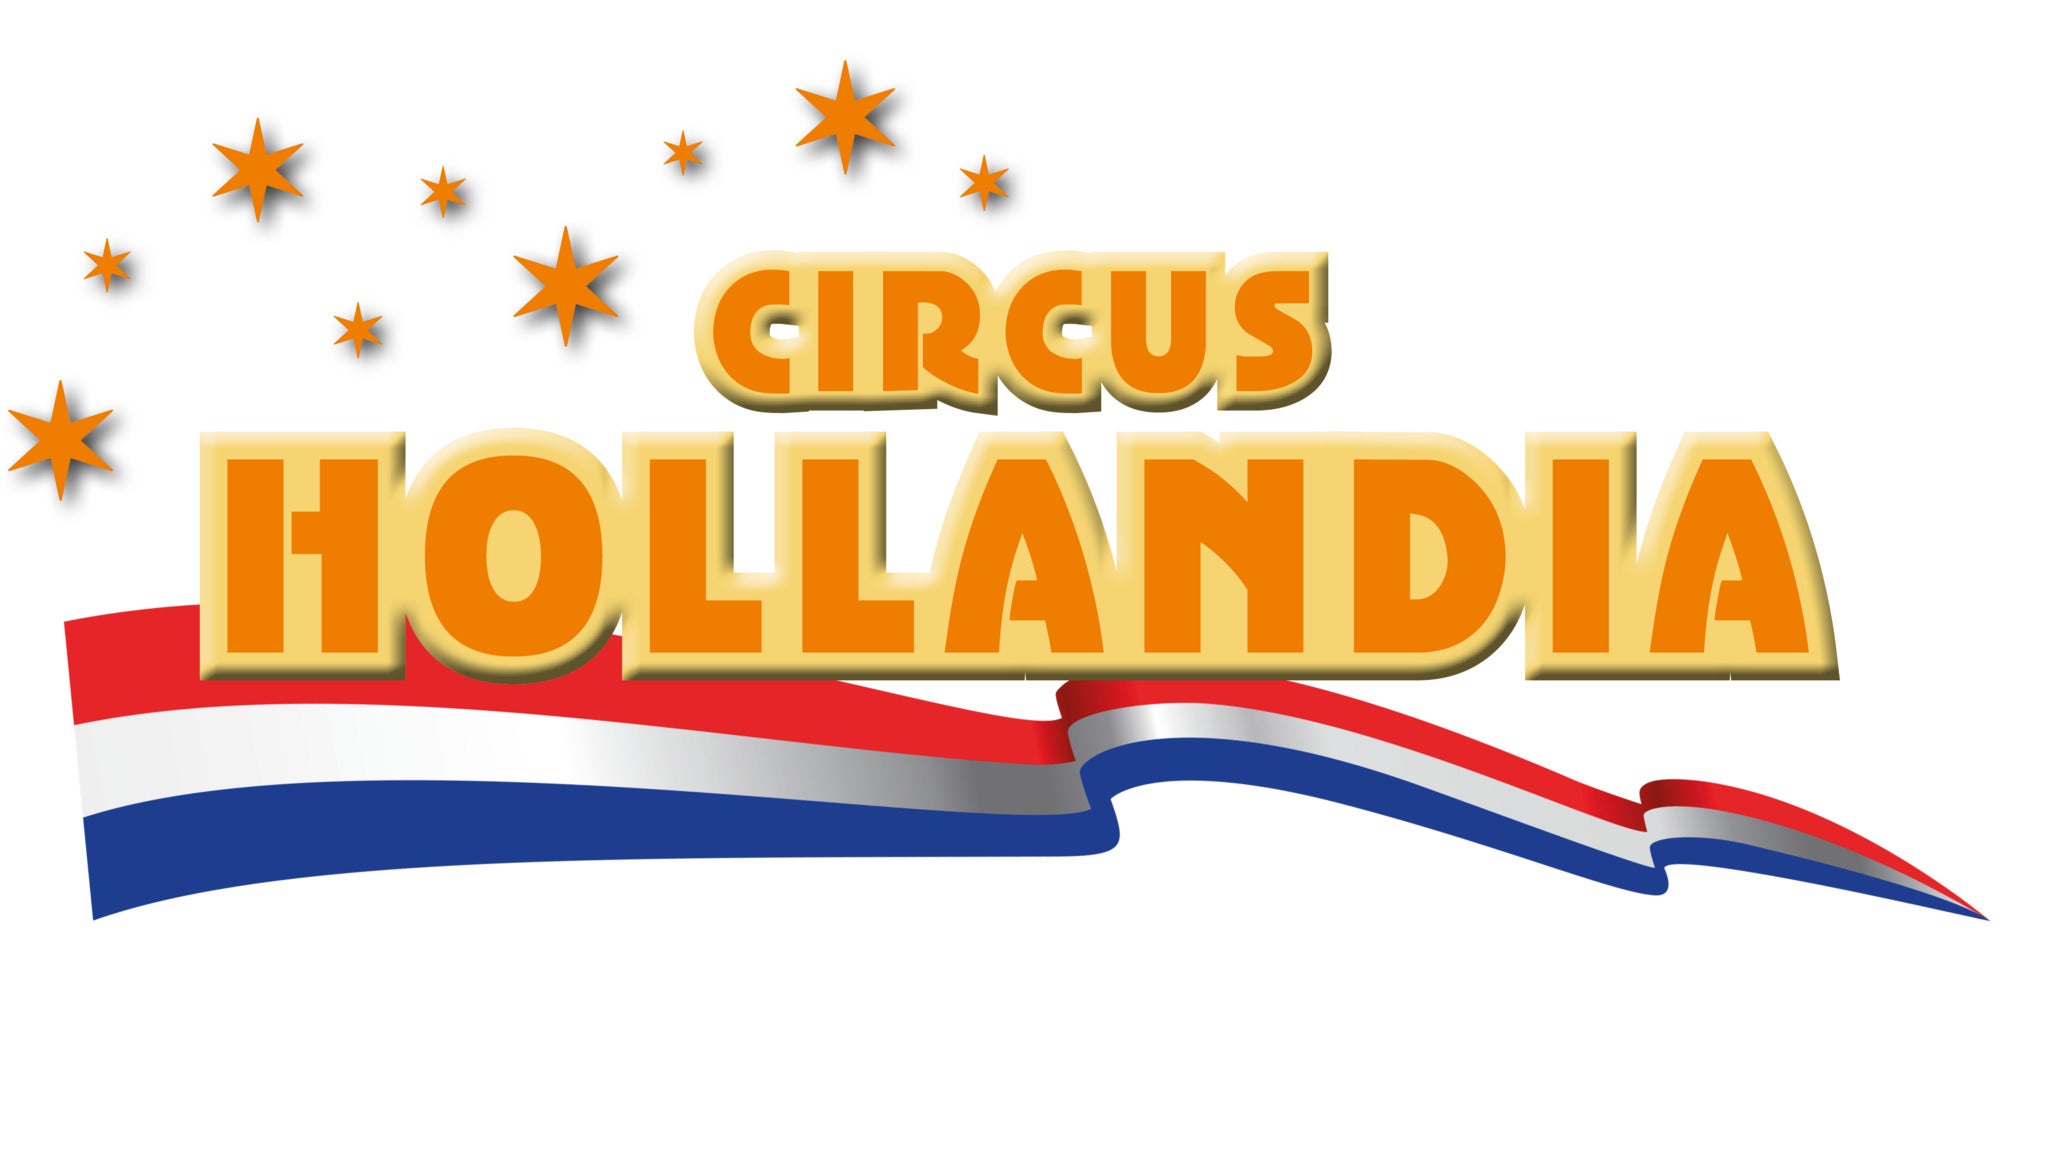 Circus Hollandia in Breda